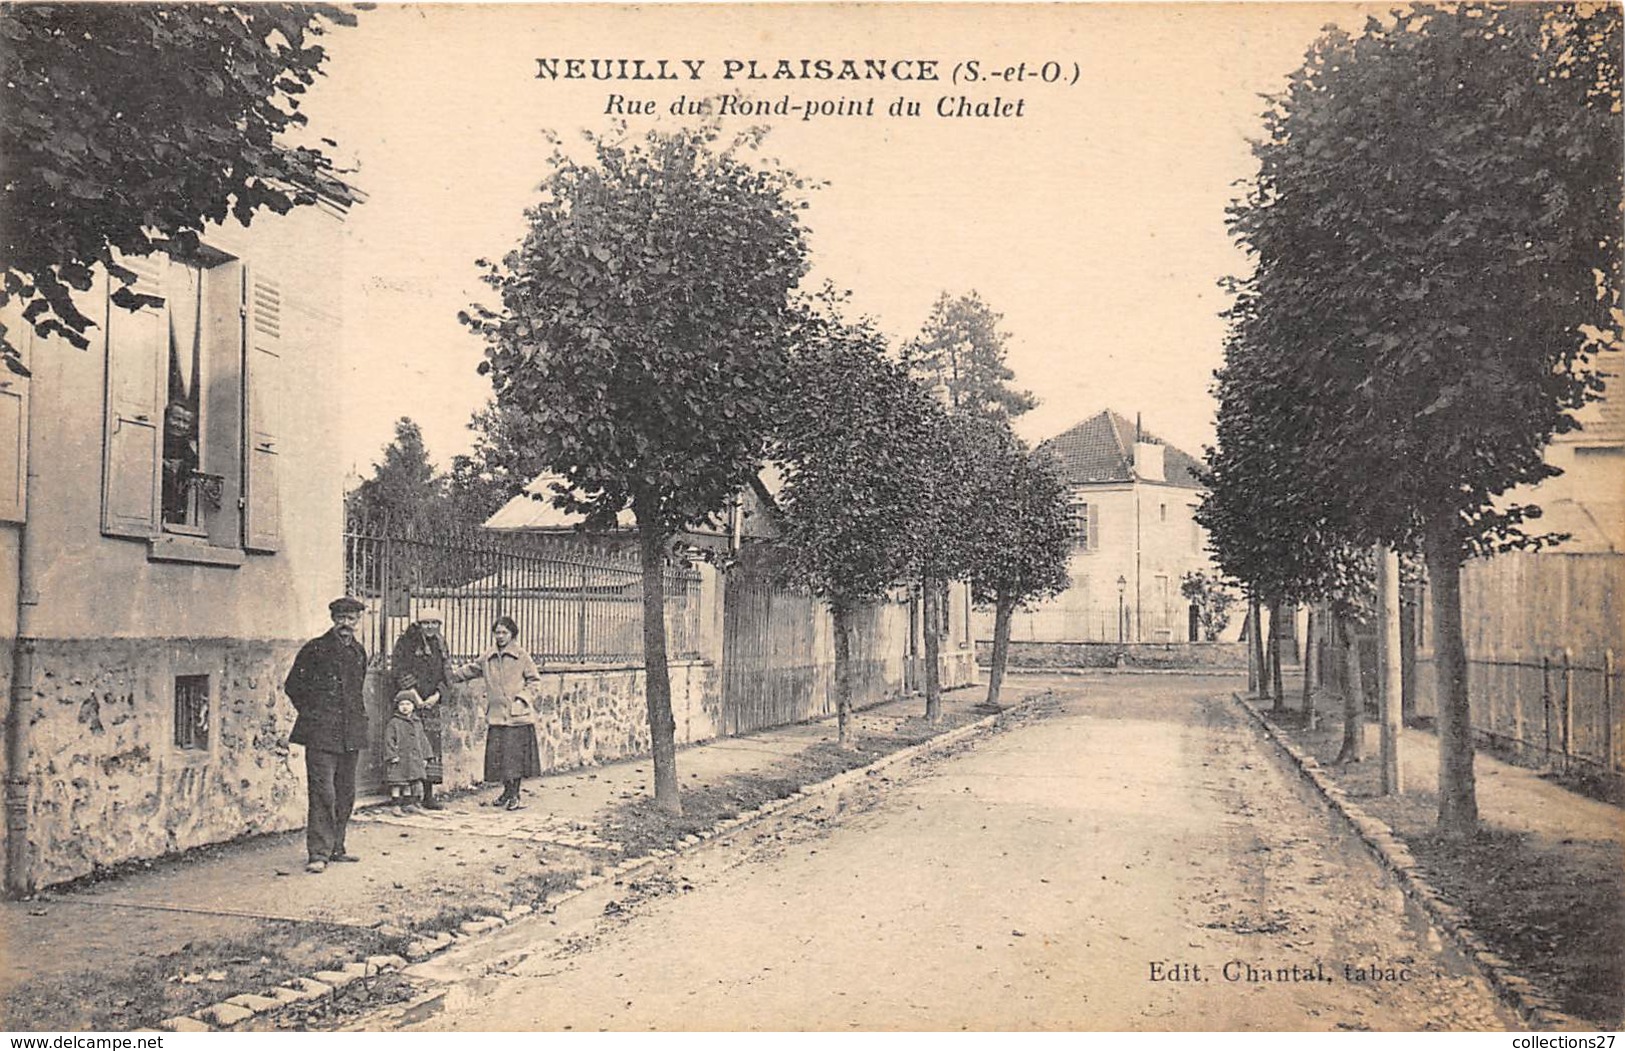 93-NEUILLY-PLAISANCE- RUE DU ROND- POINT DU CHALET - Neuilly Plaisance